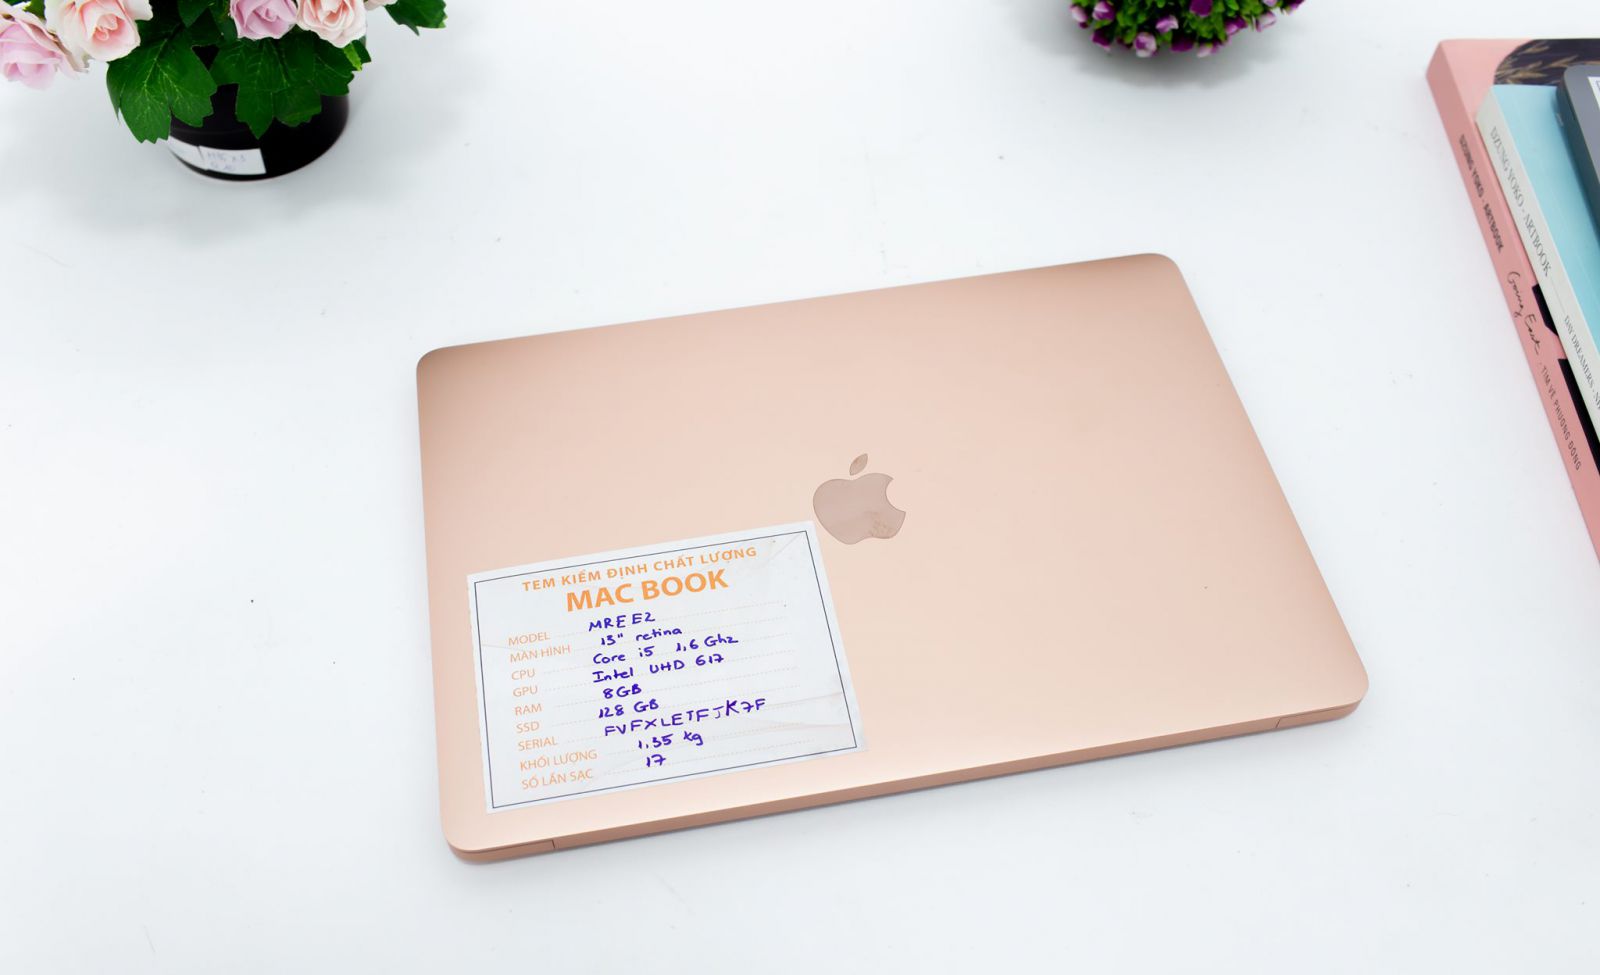 MacBook Air 2018 Rose Gold sang trọng